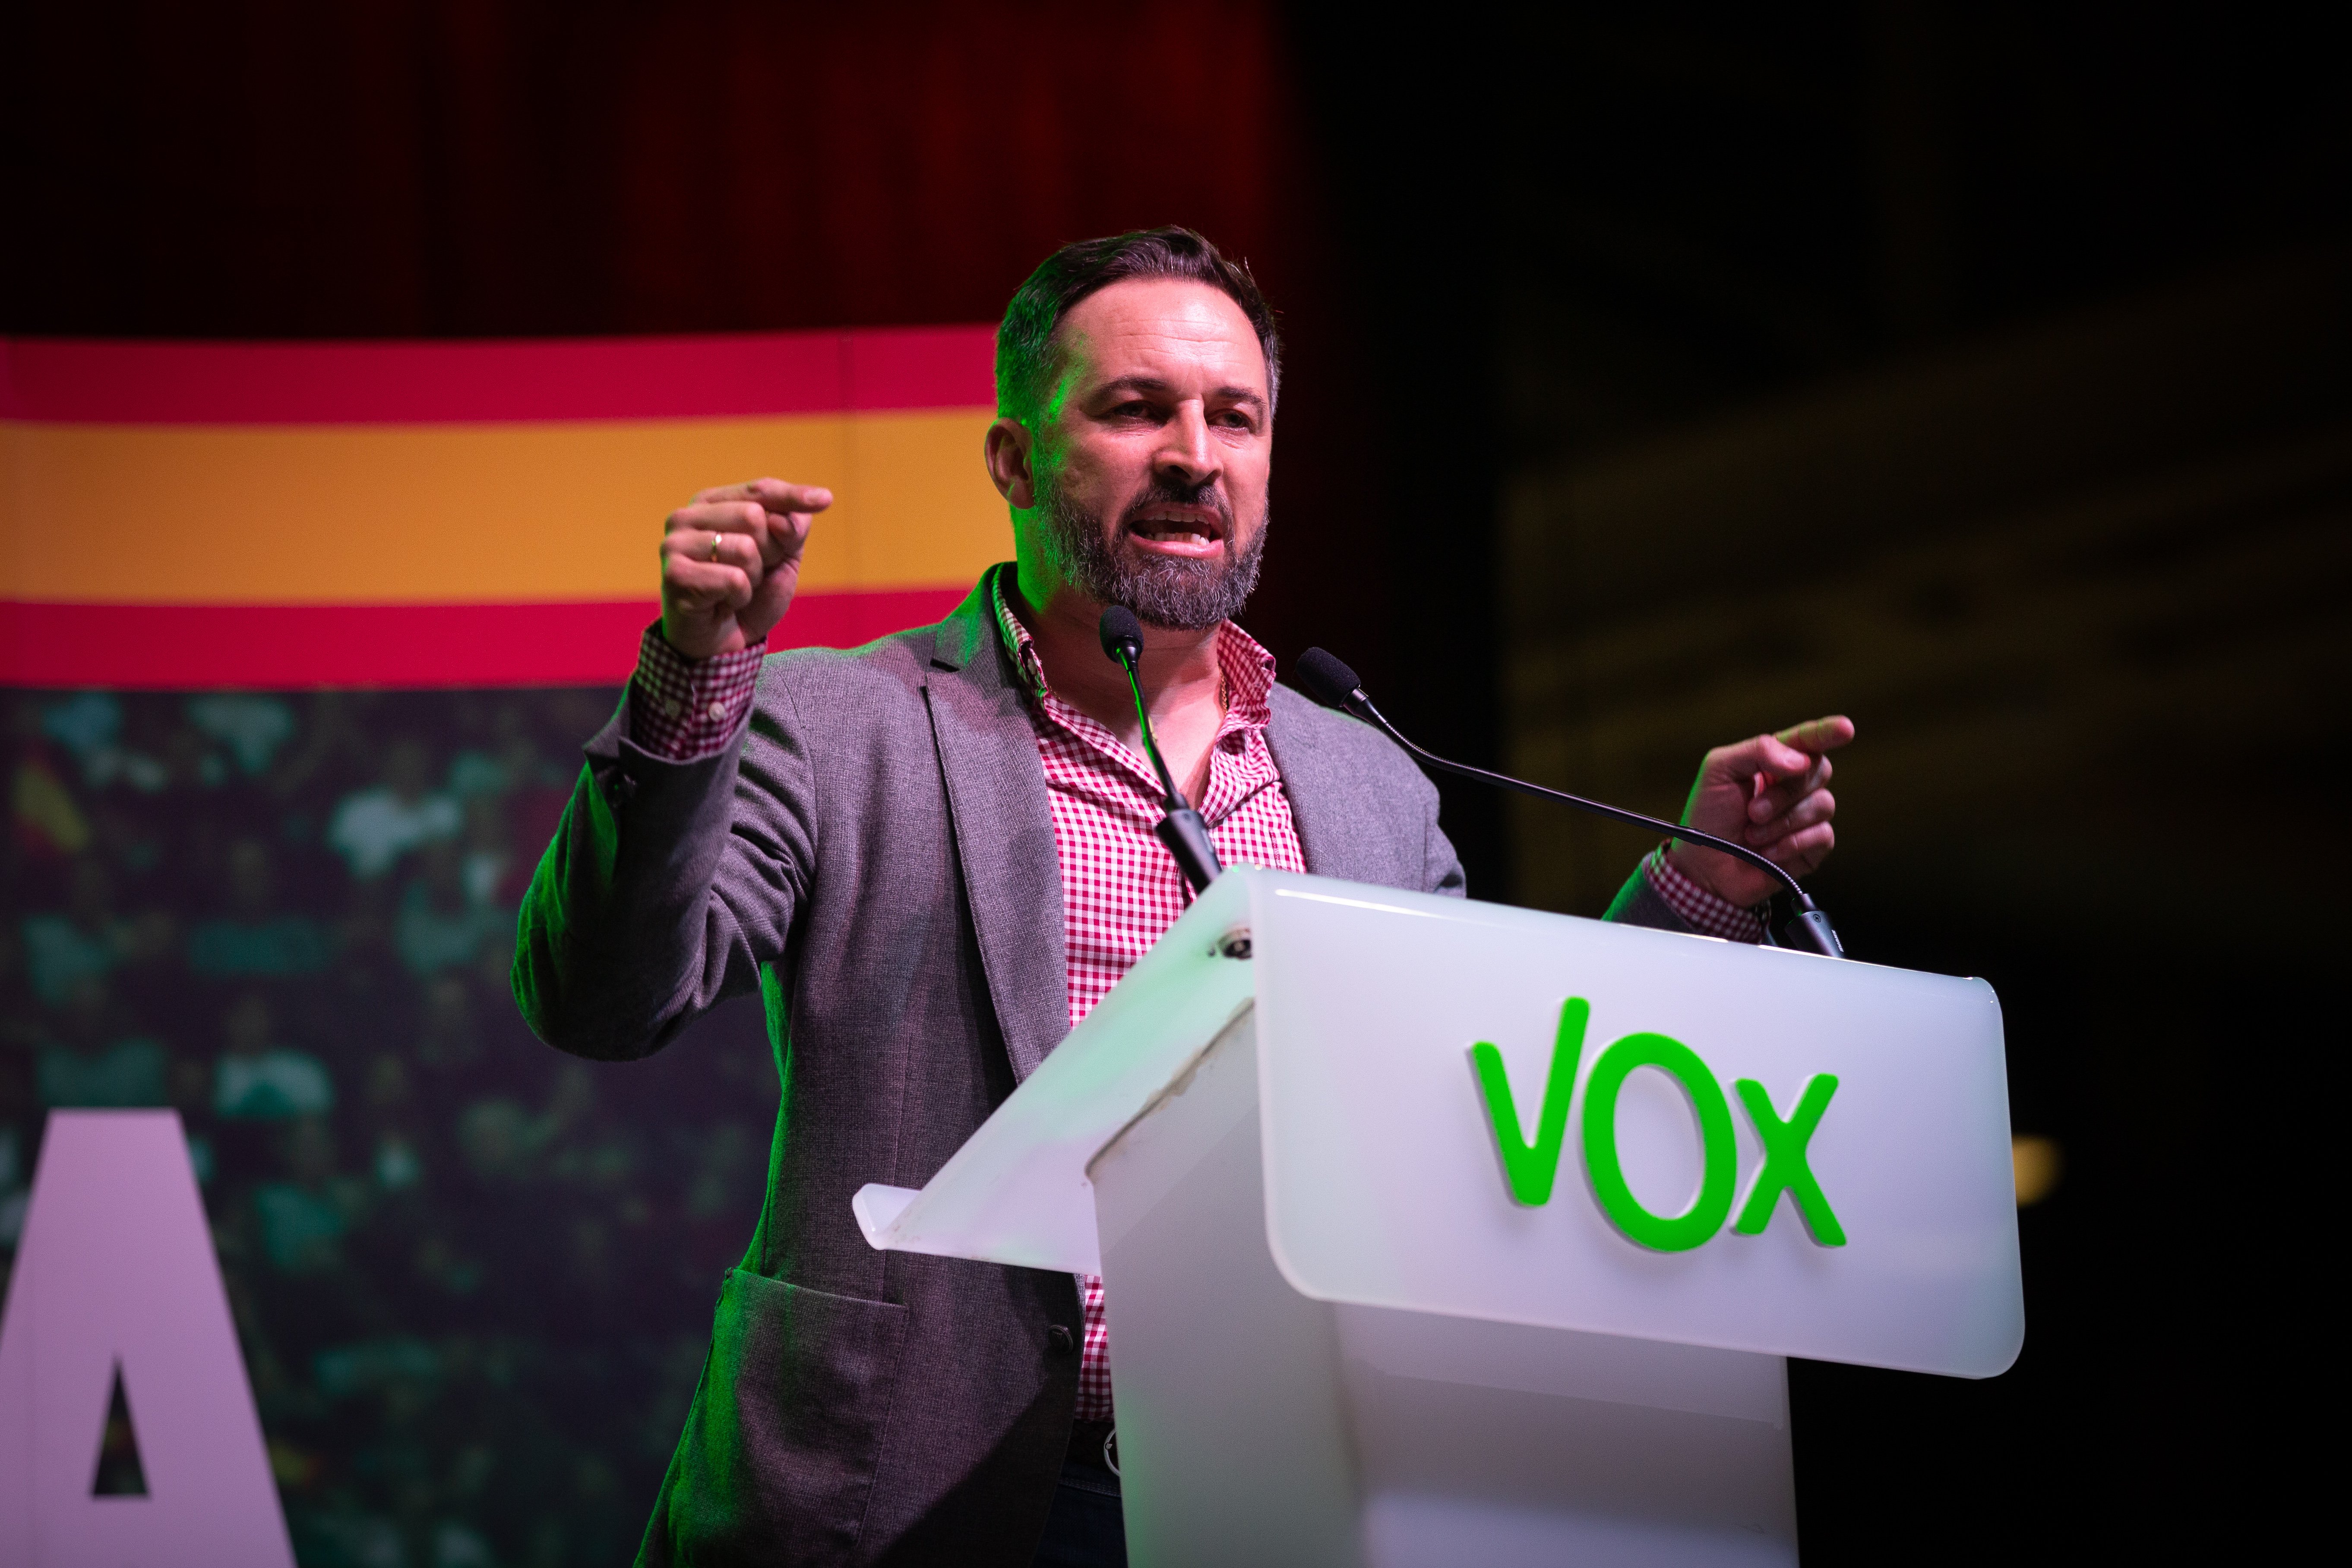 El músico británico más odiado por Vox emociona tuiteando en gallego: "Carallo!"